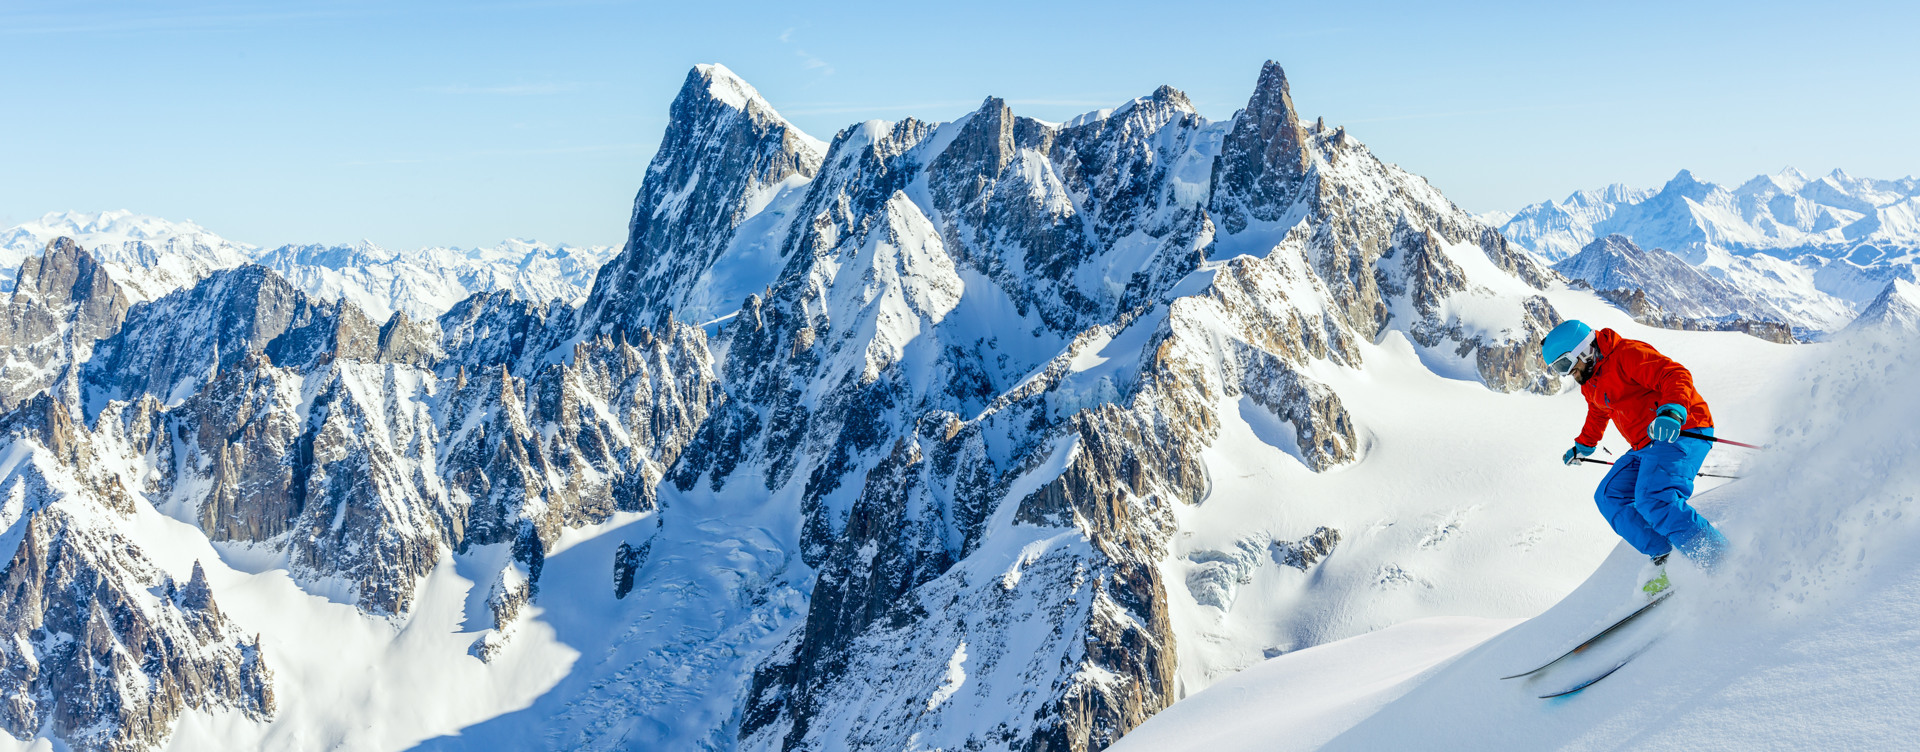 Beleef een geweldige bergvakantie
in de Franse of Oostenrijkse Alpen